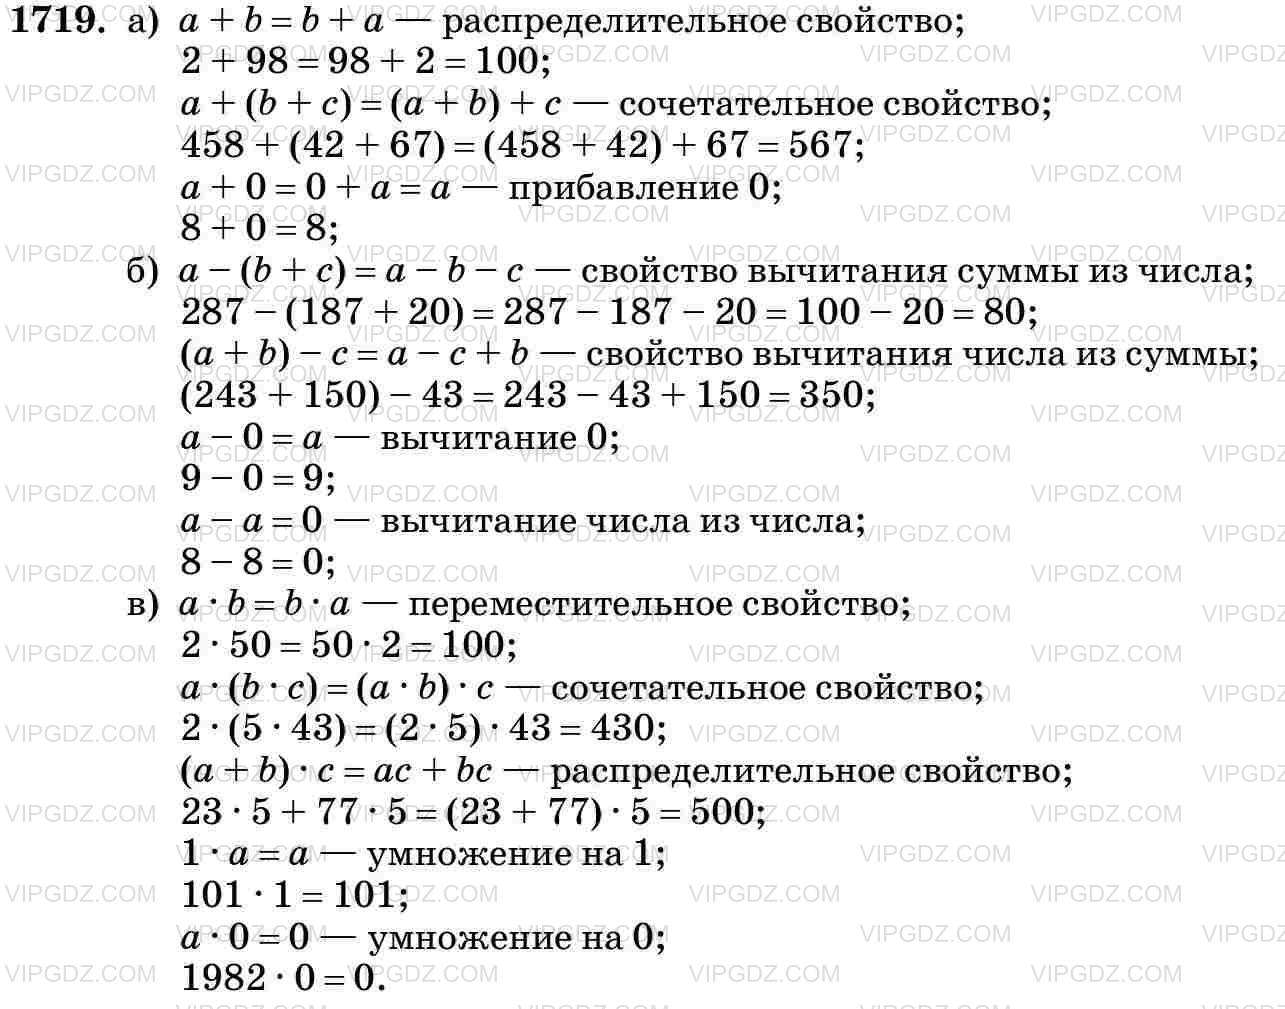 Фото ответа 3 на Задание 1719 из ГДЗ по Математике за 5 класс: Н. Я. Виленкин, В. И. Жохов, А. С. Чесноков, С. И. Шварцбурд. 2013г.